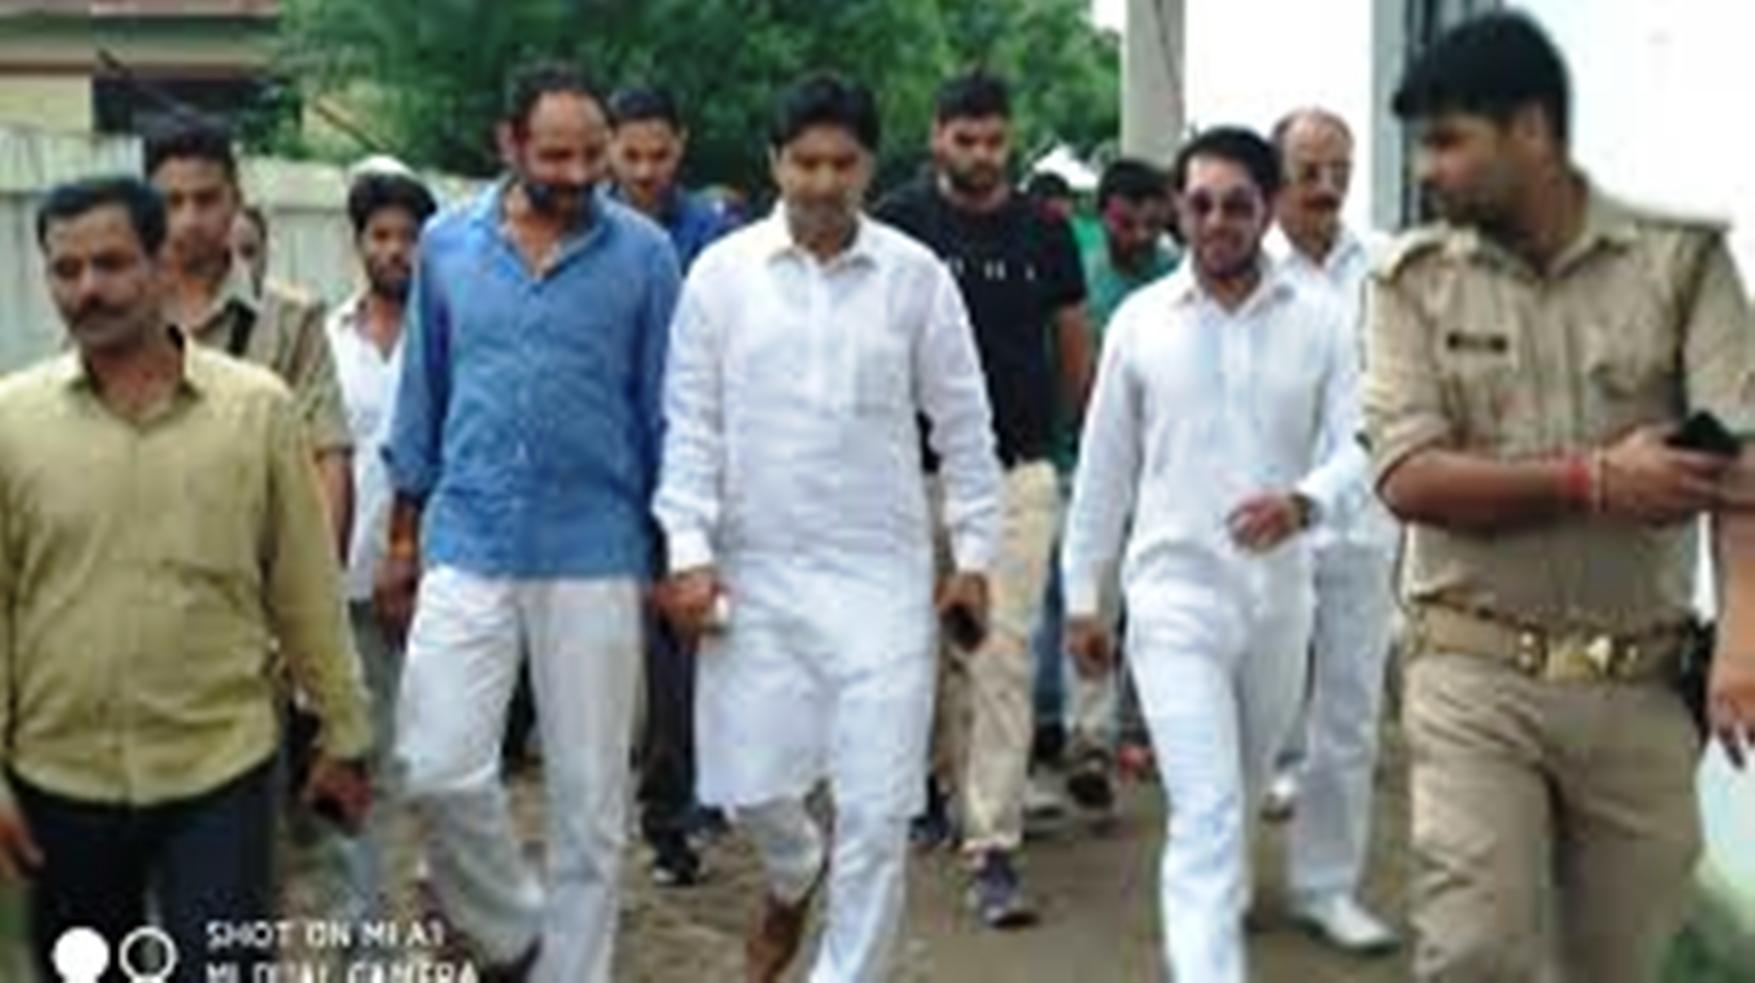 बीजेपी के अभिजीत सिंह सांगा के साथ ही सपा विधायकों की गिरफ्तारी का वारंट